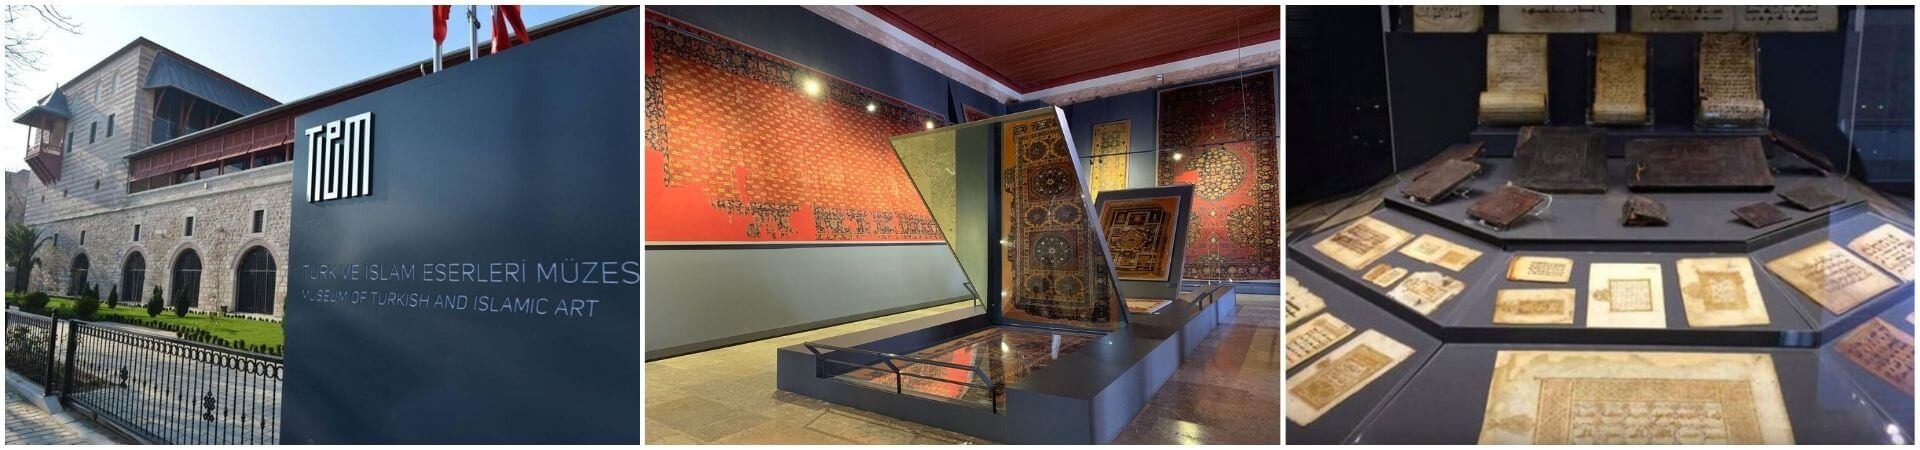 Экскурсия по музею турецкого и исламского искусства